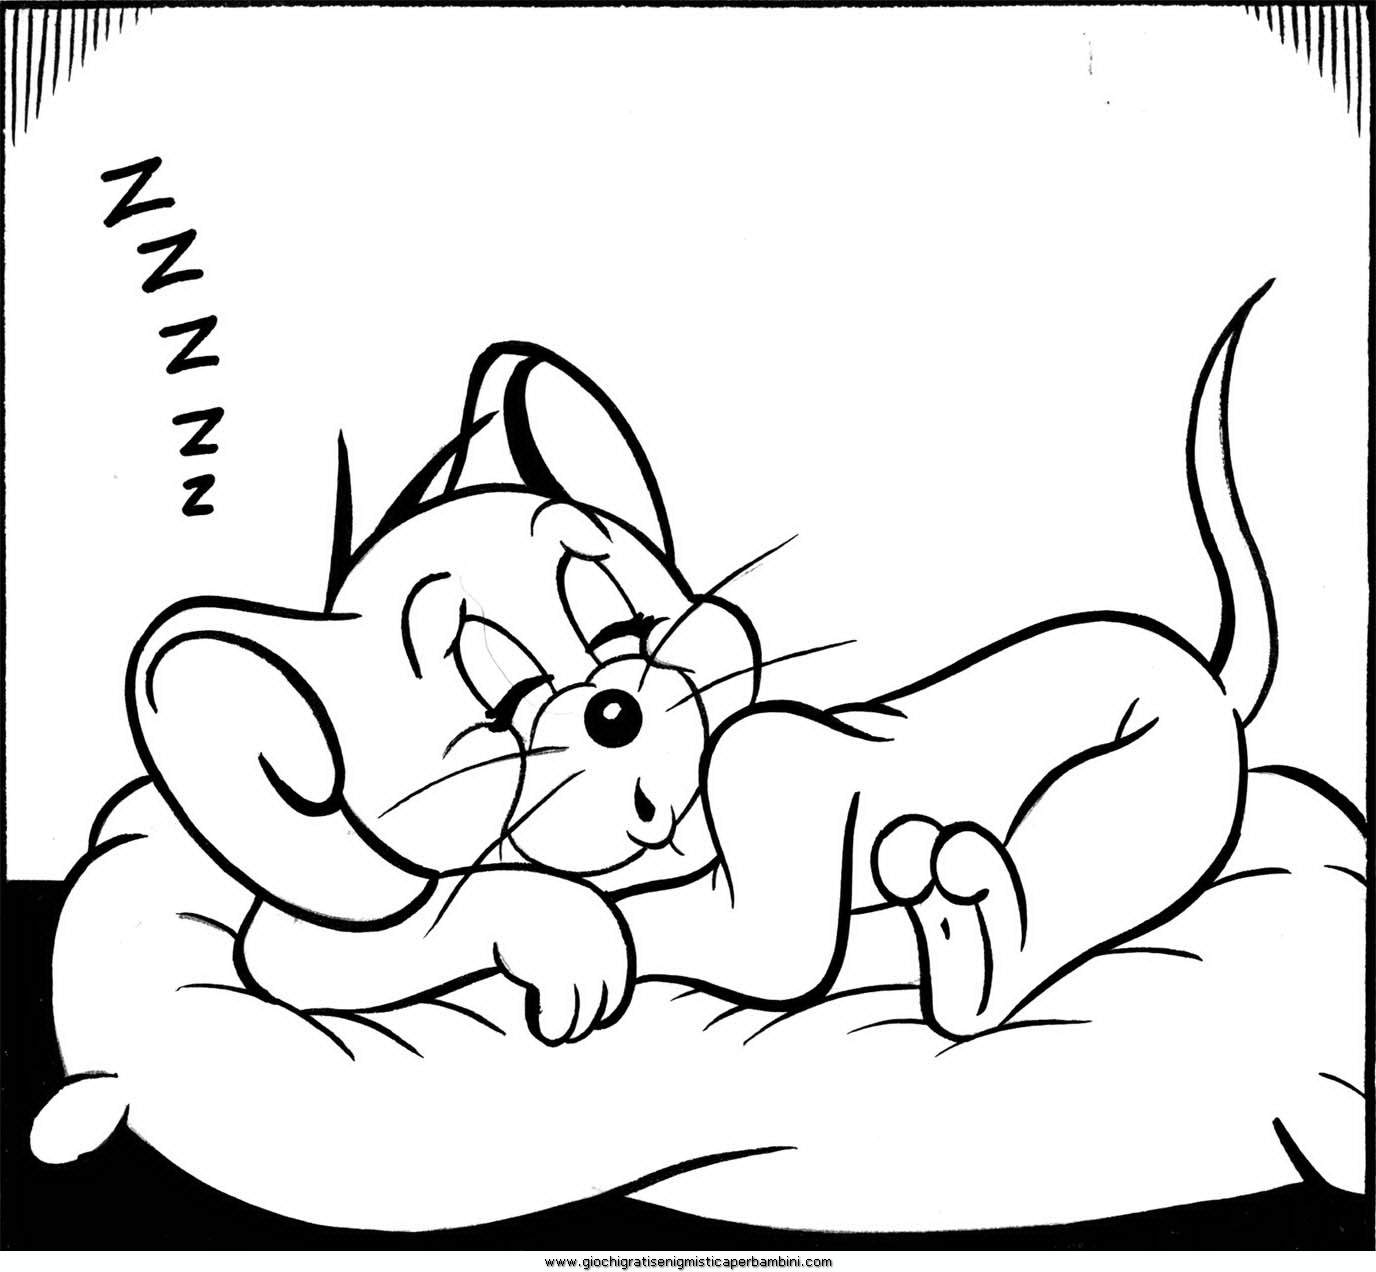 Il topolino Jerry che dorme disegni da colorare per bambini